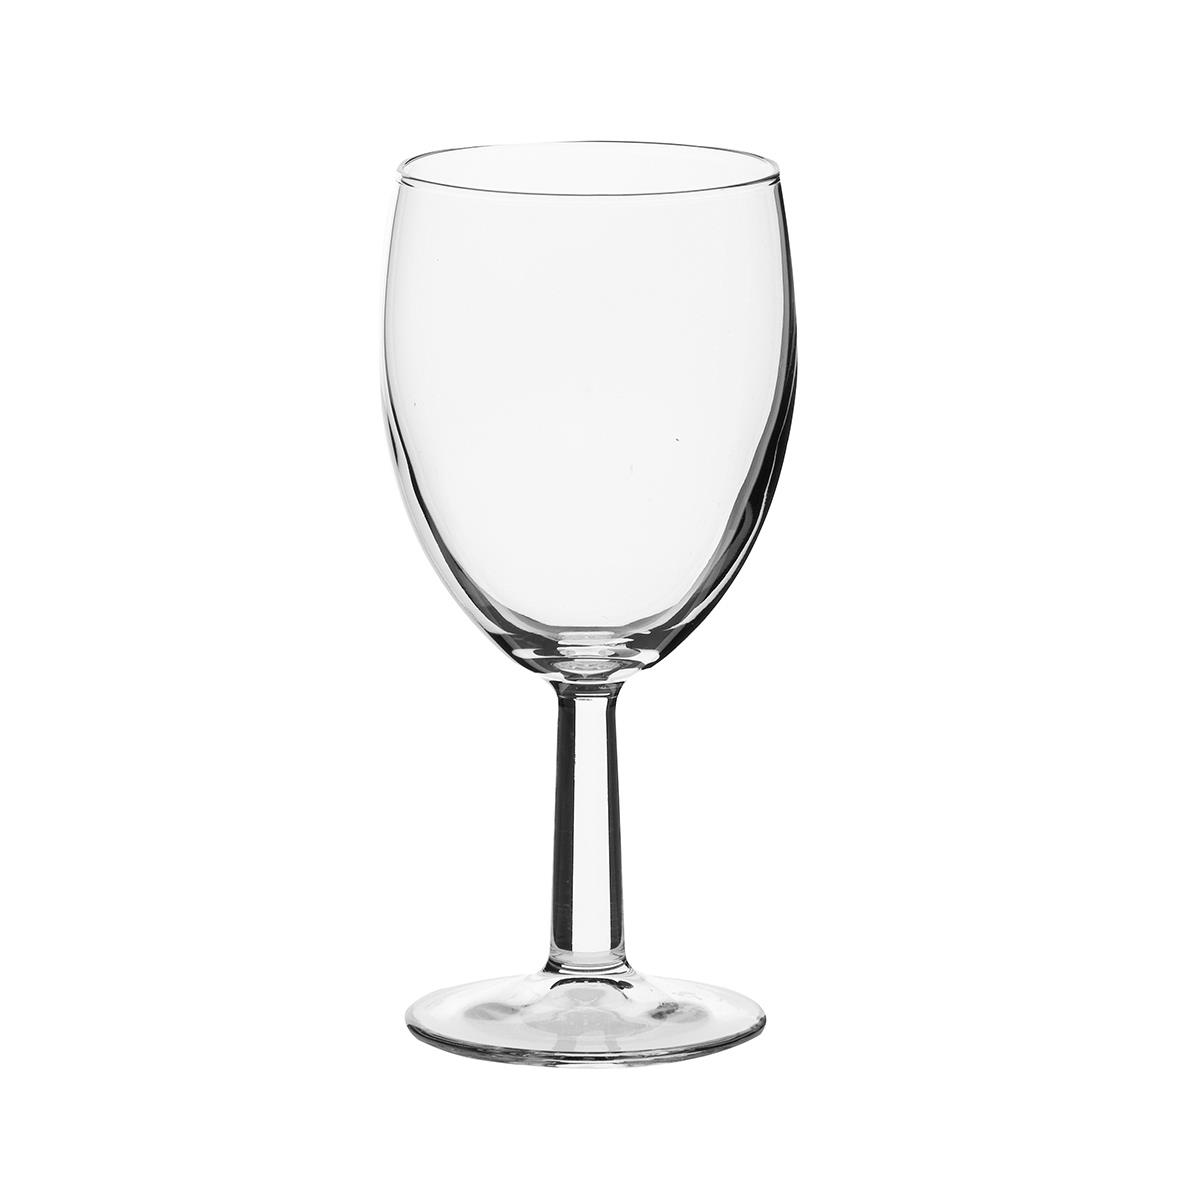 Weinglas mit 24,5 cl Fassungsvermögen der Marke Brasserie bedruckt oder graviert bekommen